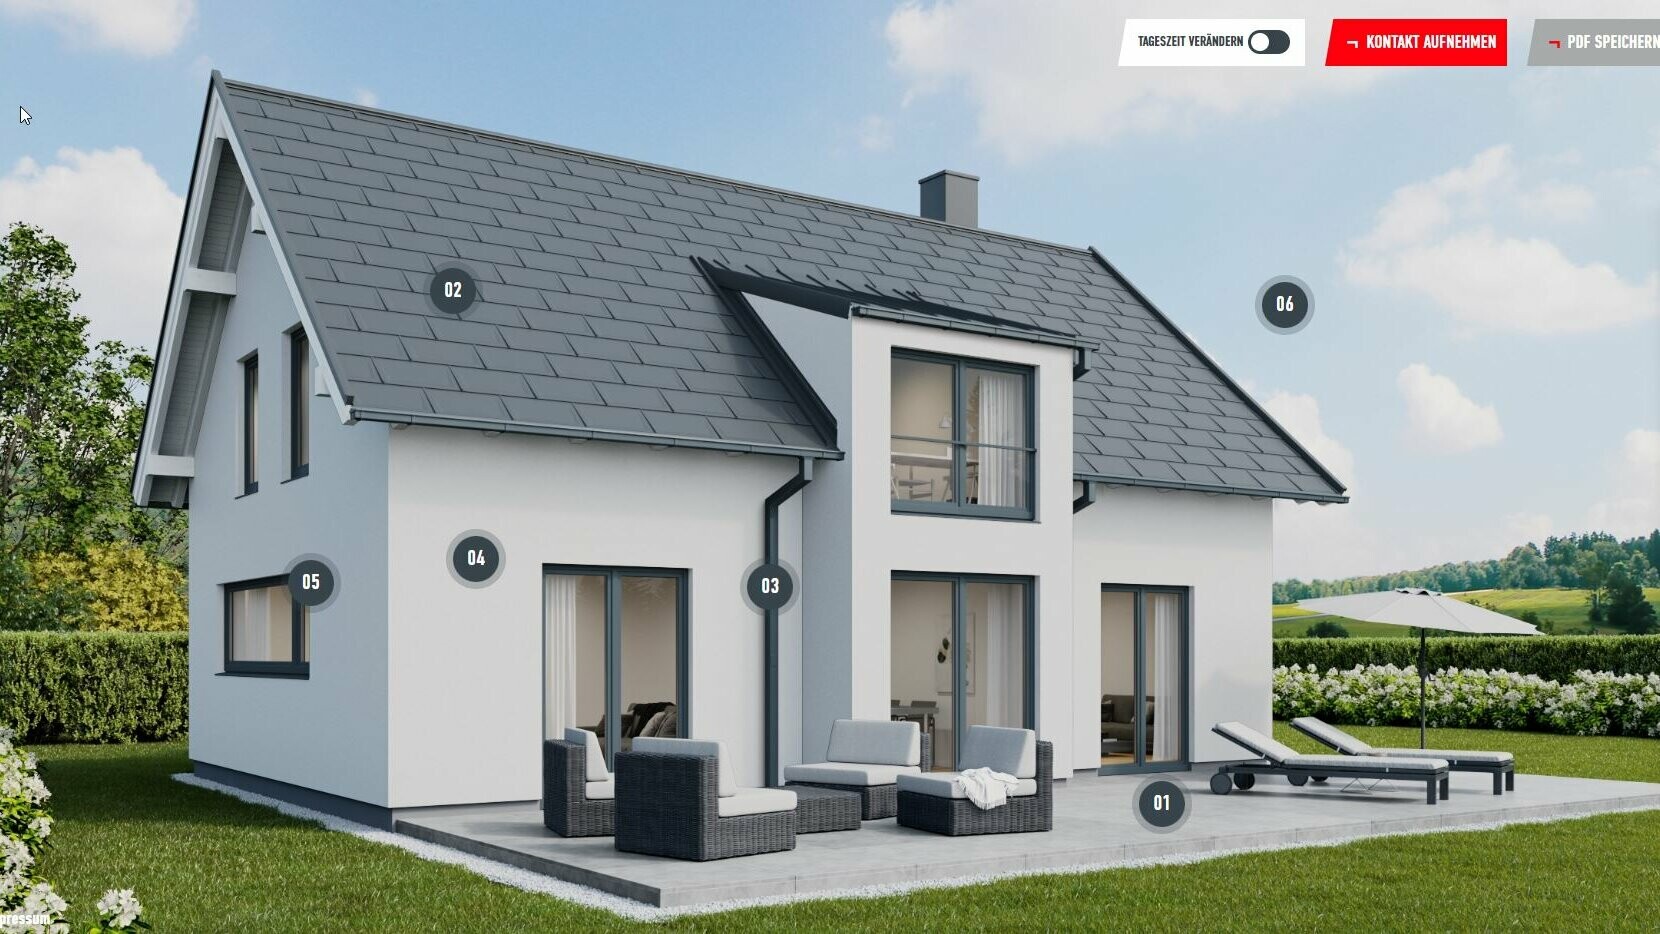 Esempio della configurazione di una casa unifamiliare con tetto a due falde realizzata in un’area rurale con tegole PREFA R.16 in P.10 grigio scuro.